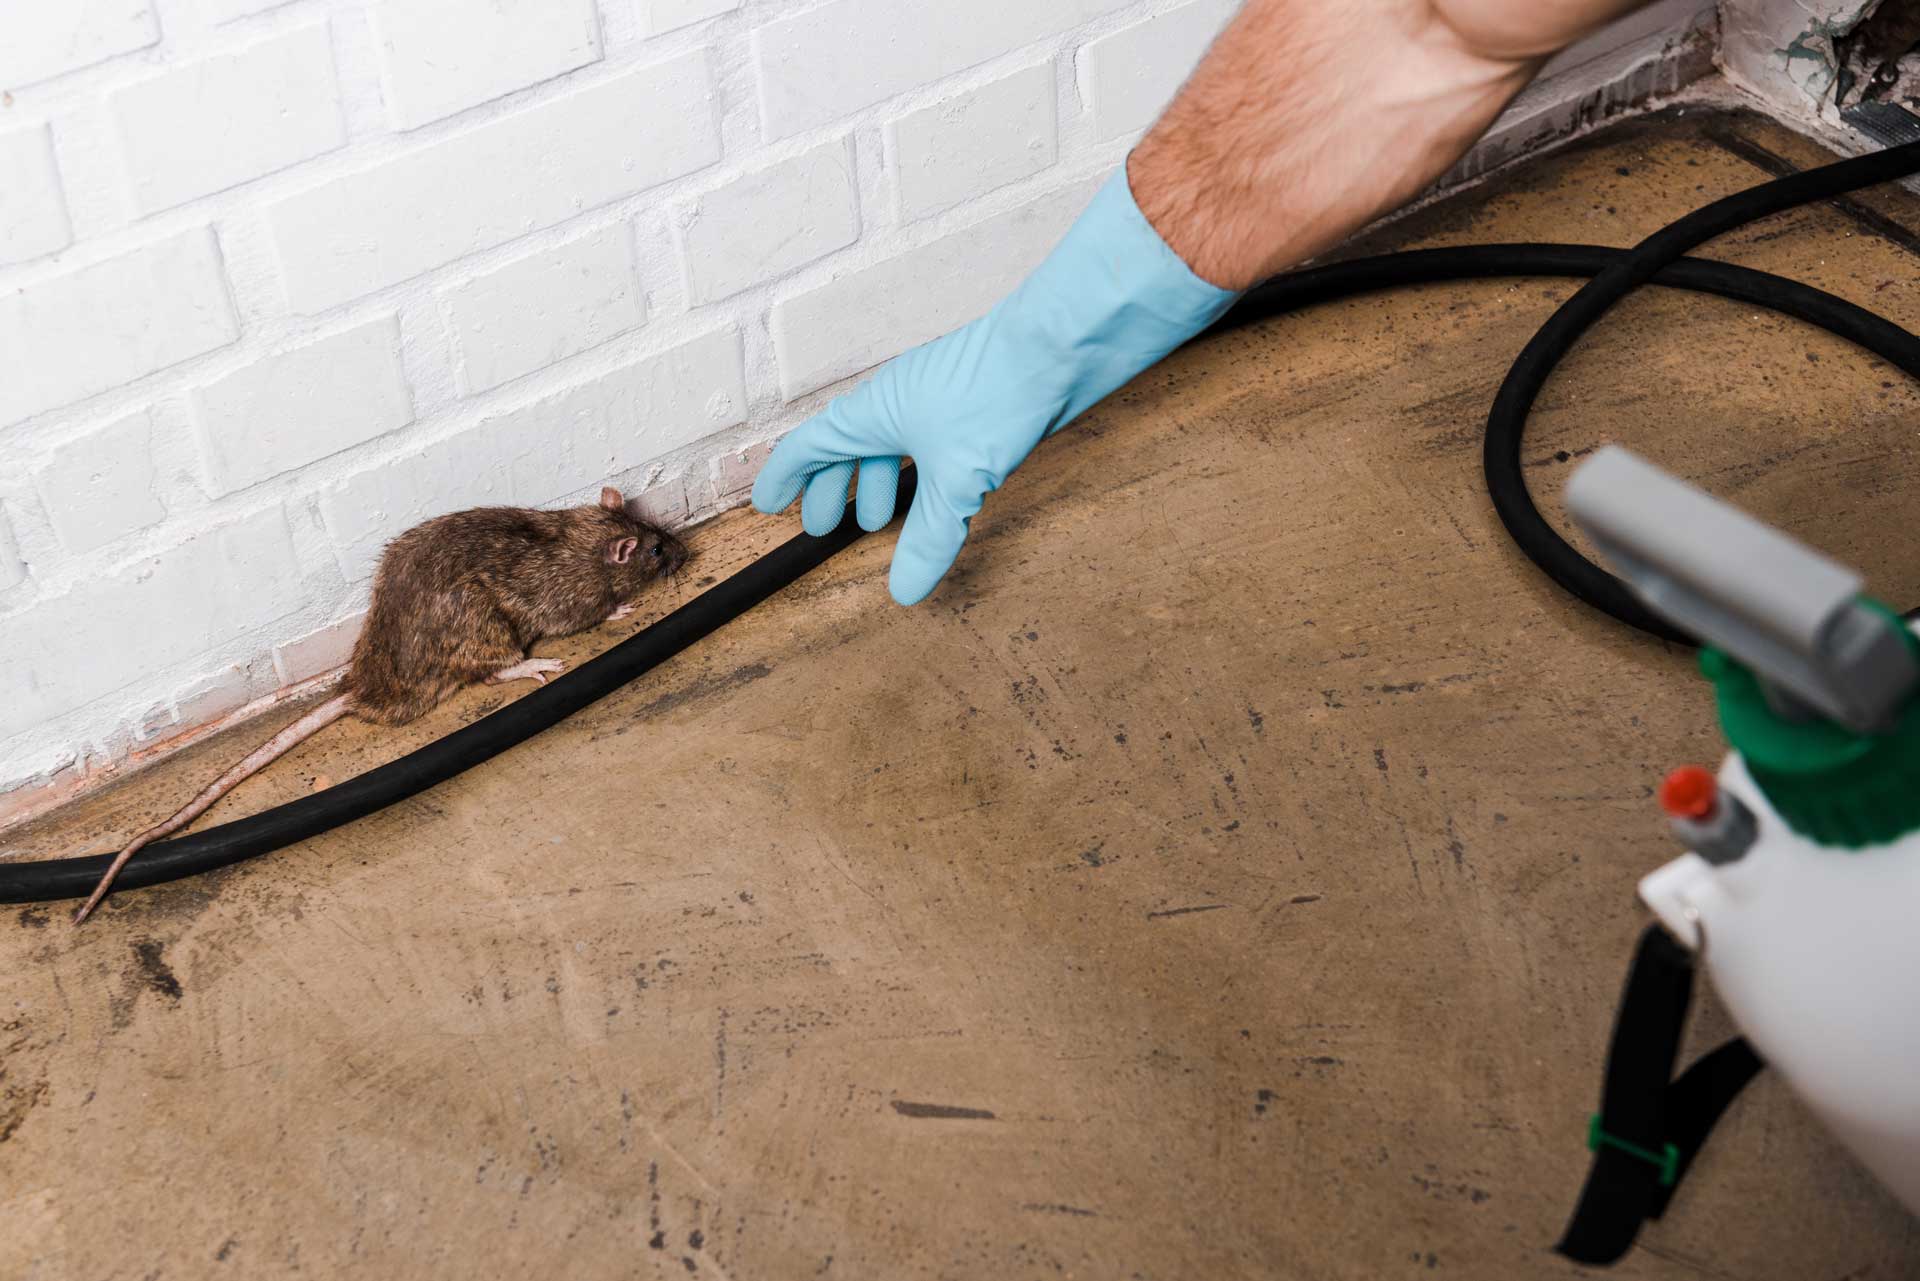 Rat dans un domicile prêt à être capturé par un professionnel